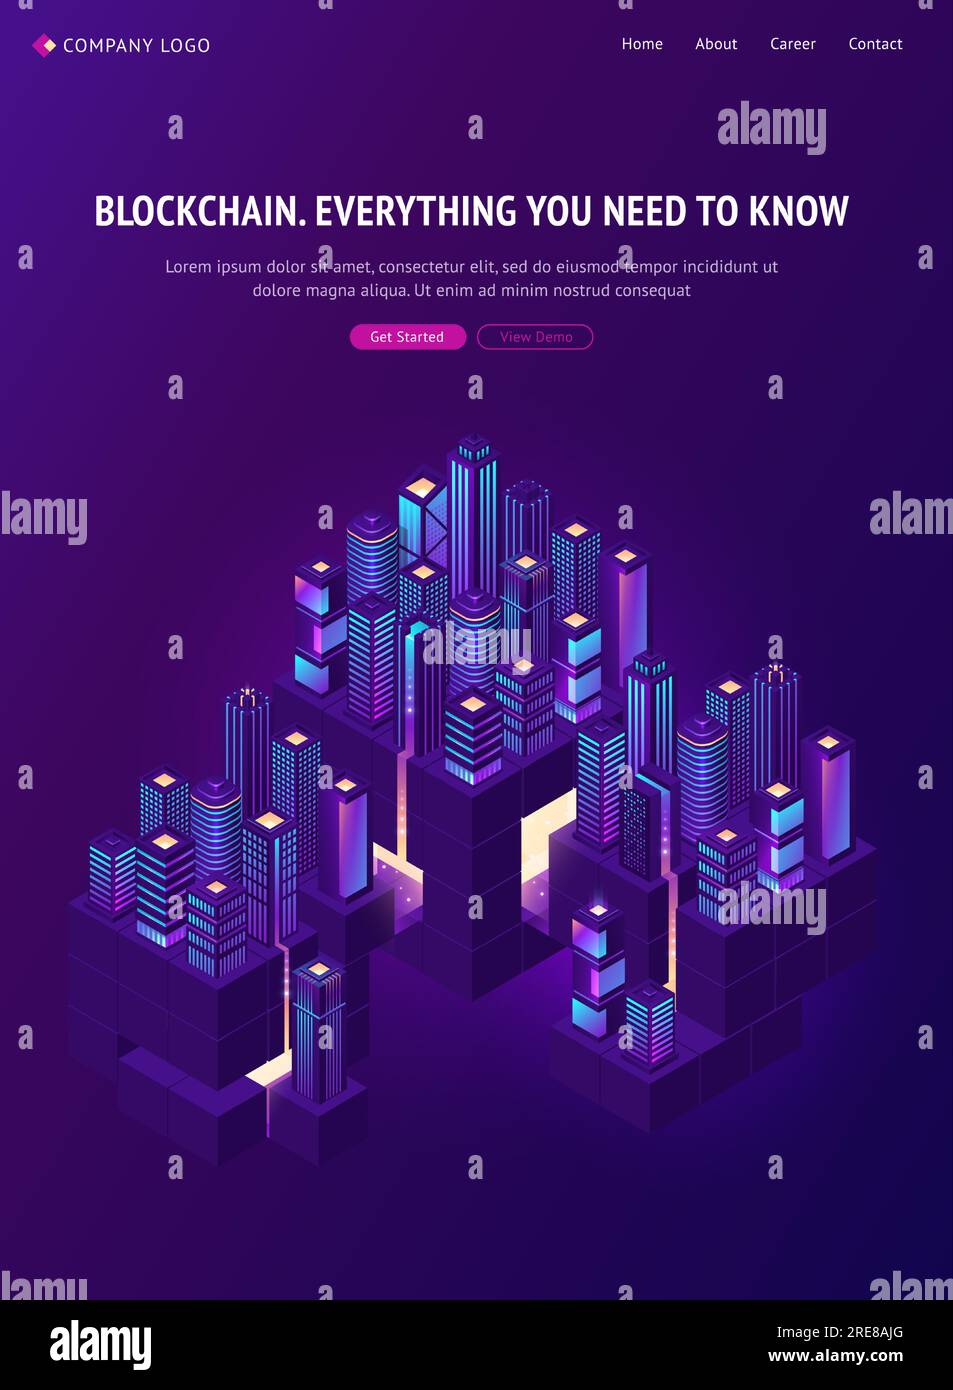 Blockchain-Technologie auf der isometrischen landing-Page von smartcity. Smart City Community mit Rechenzentren, Servern und Krypto-Blockkettengebäuden, Neonglanz-Wolkenkratzern, Kryptowährung, 3D-Vektor-Webbanner Stock Vektor